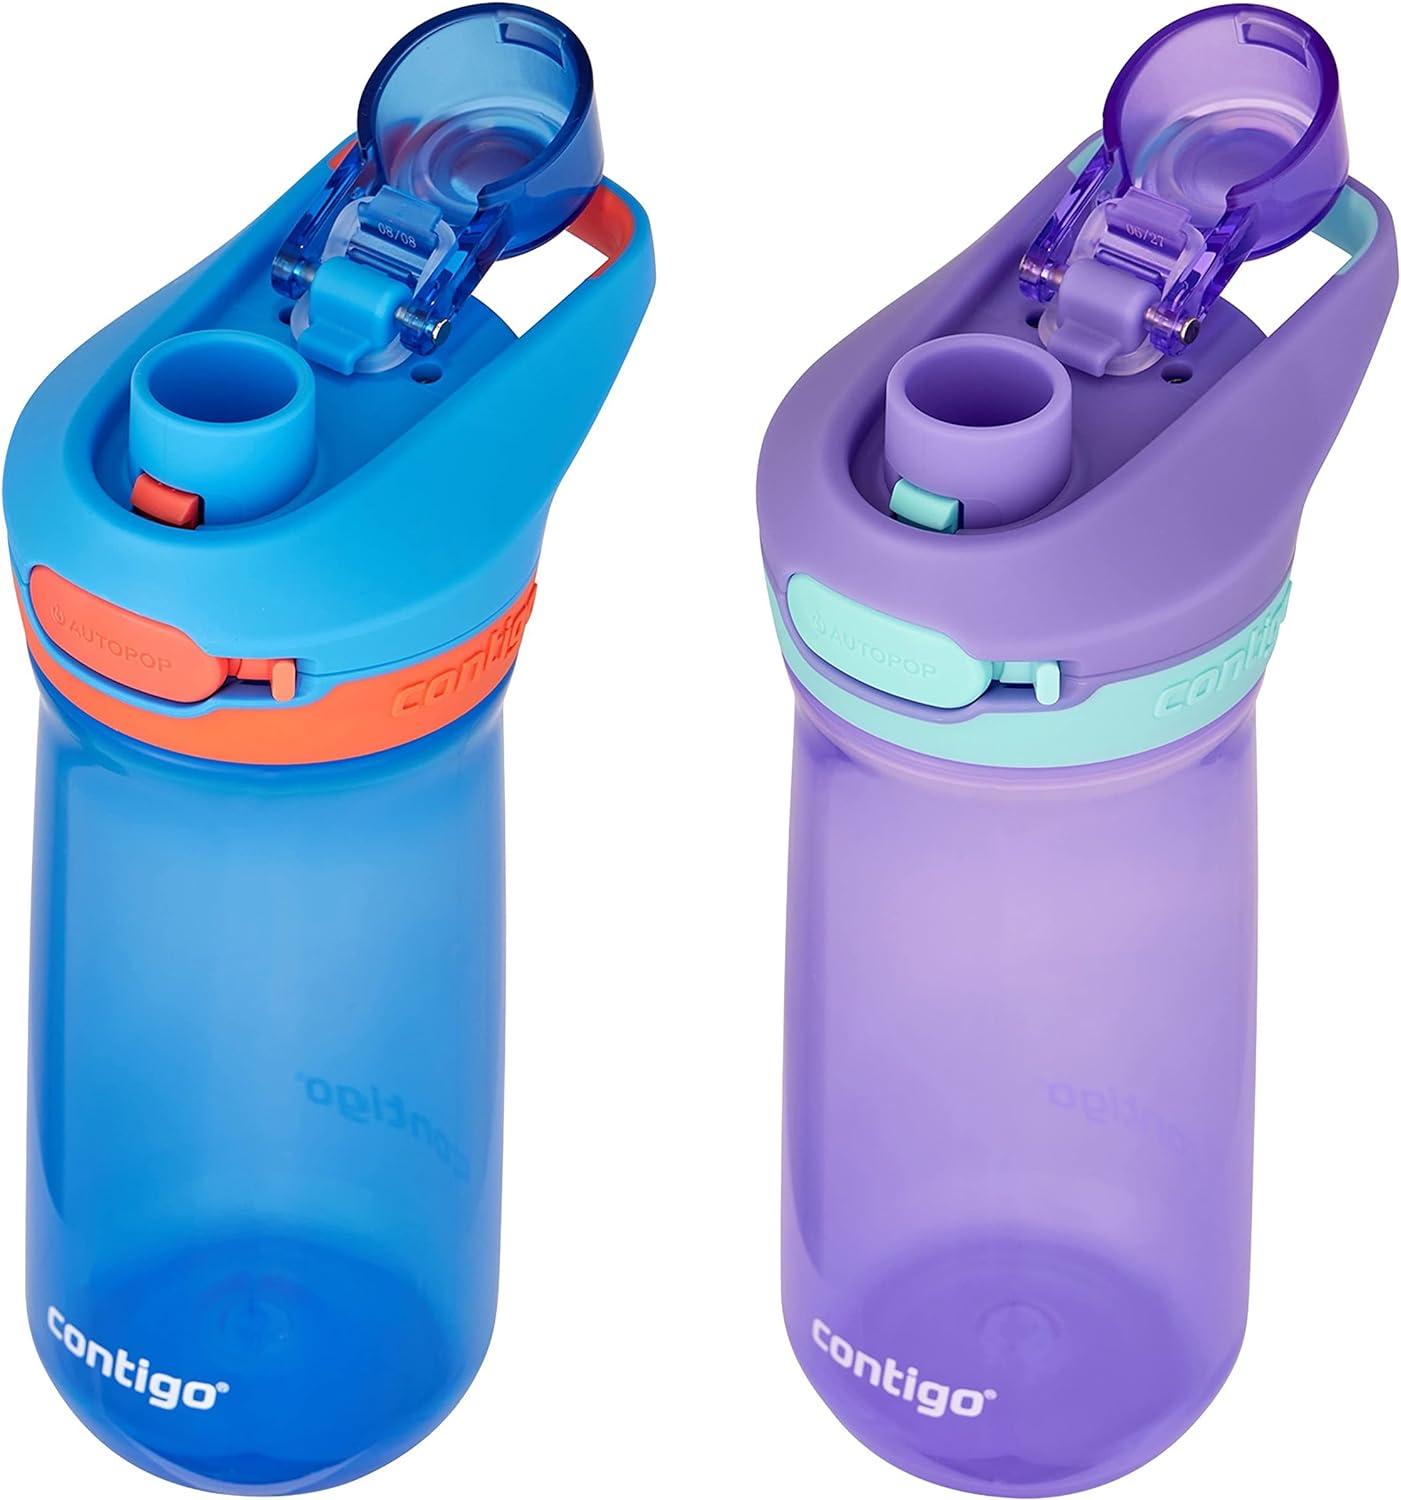 Contigo Kids Micah Water Bottle with Leak-Proof Lid, Blue, 20 oz.